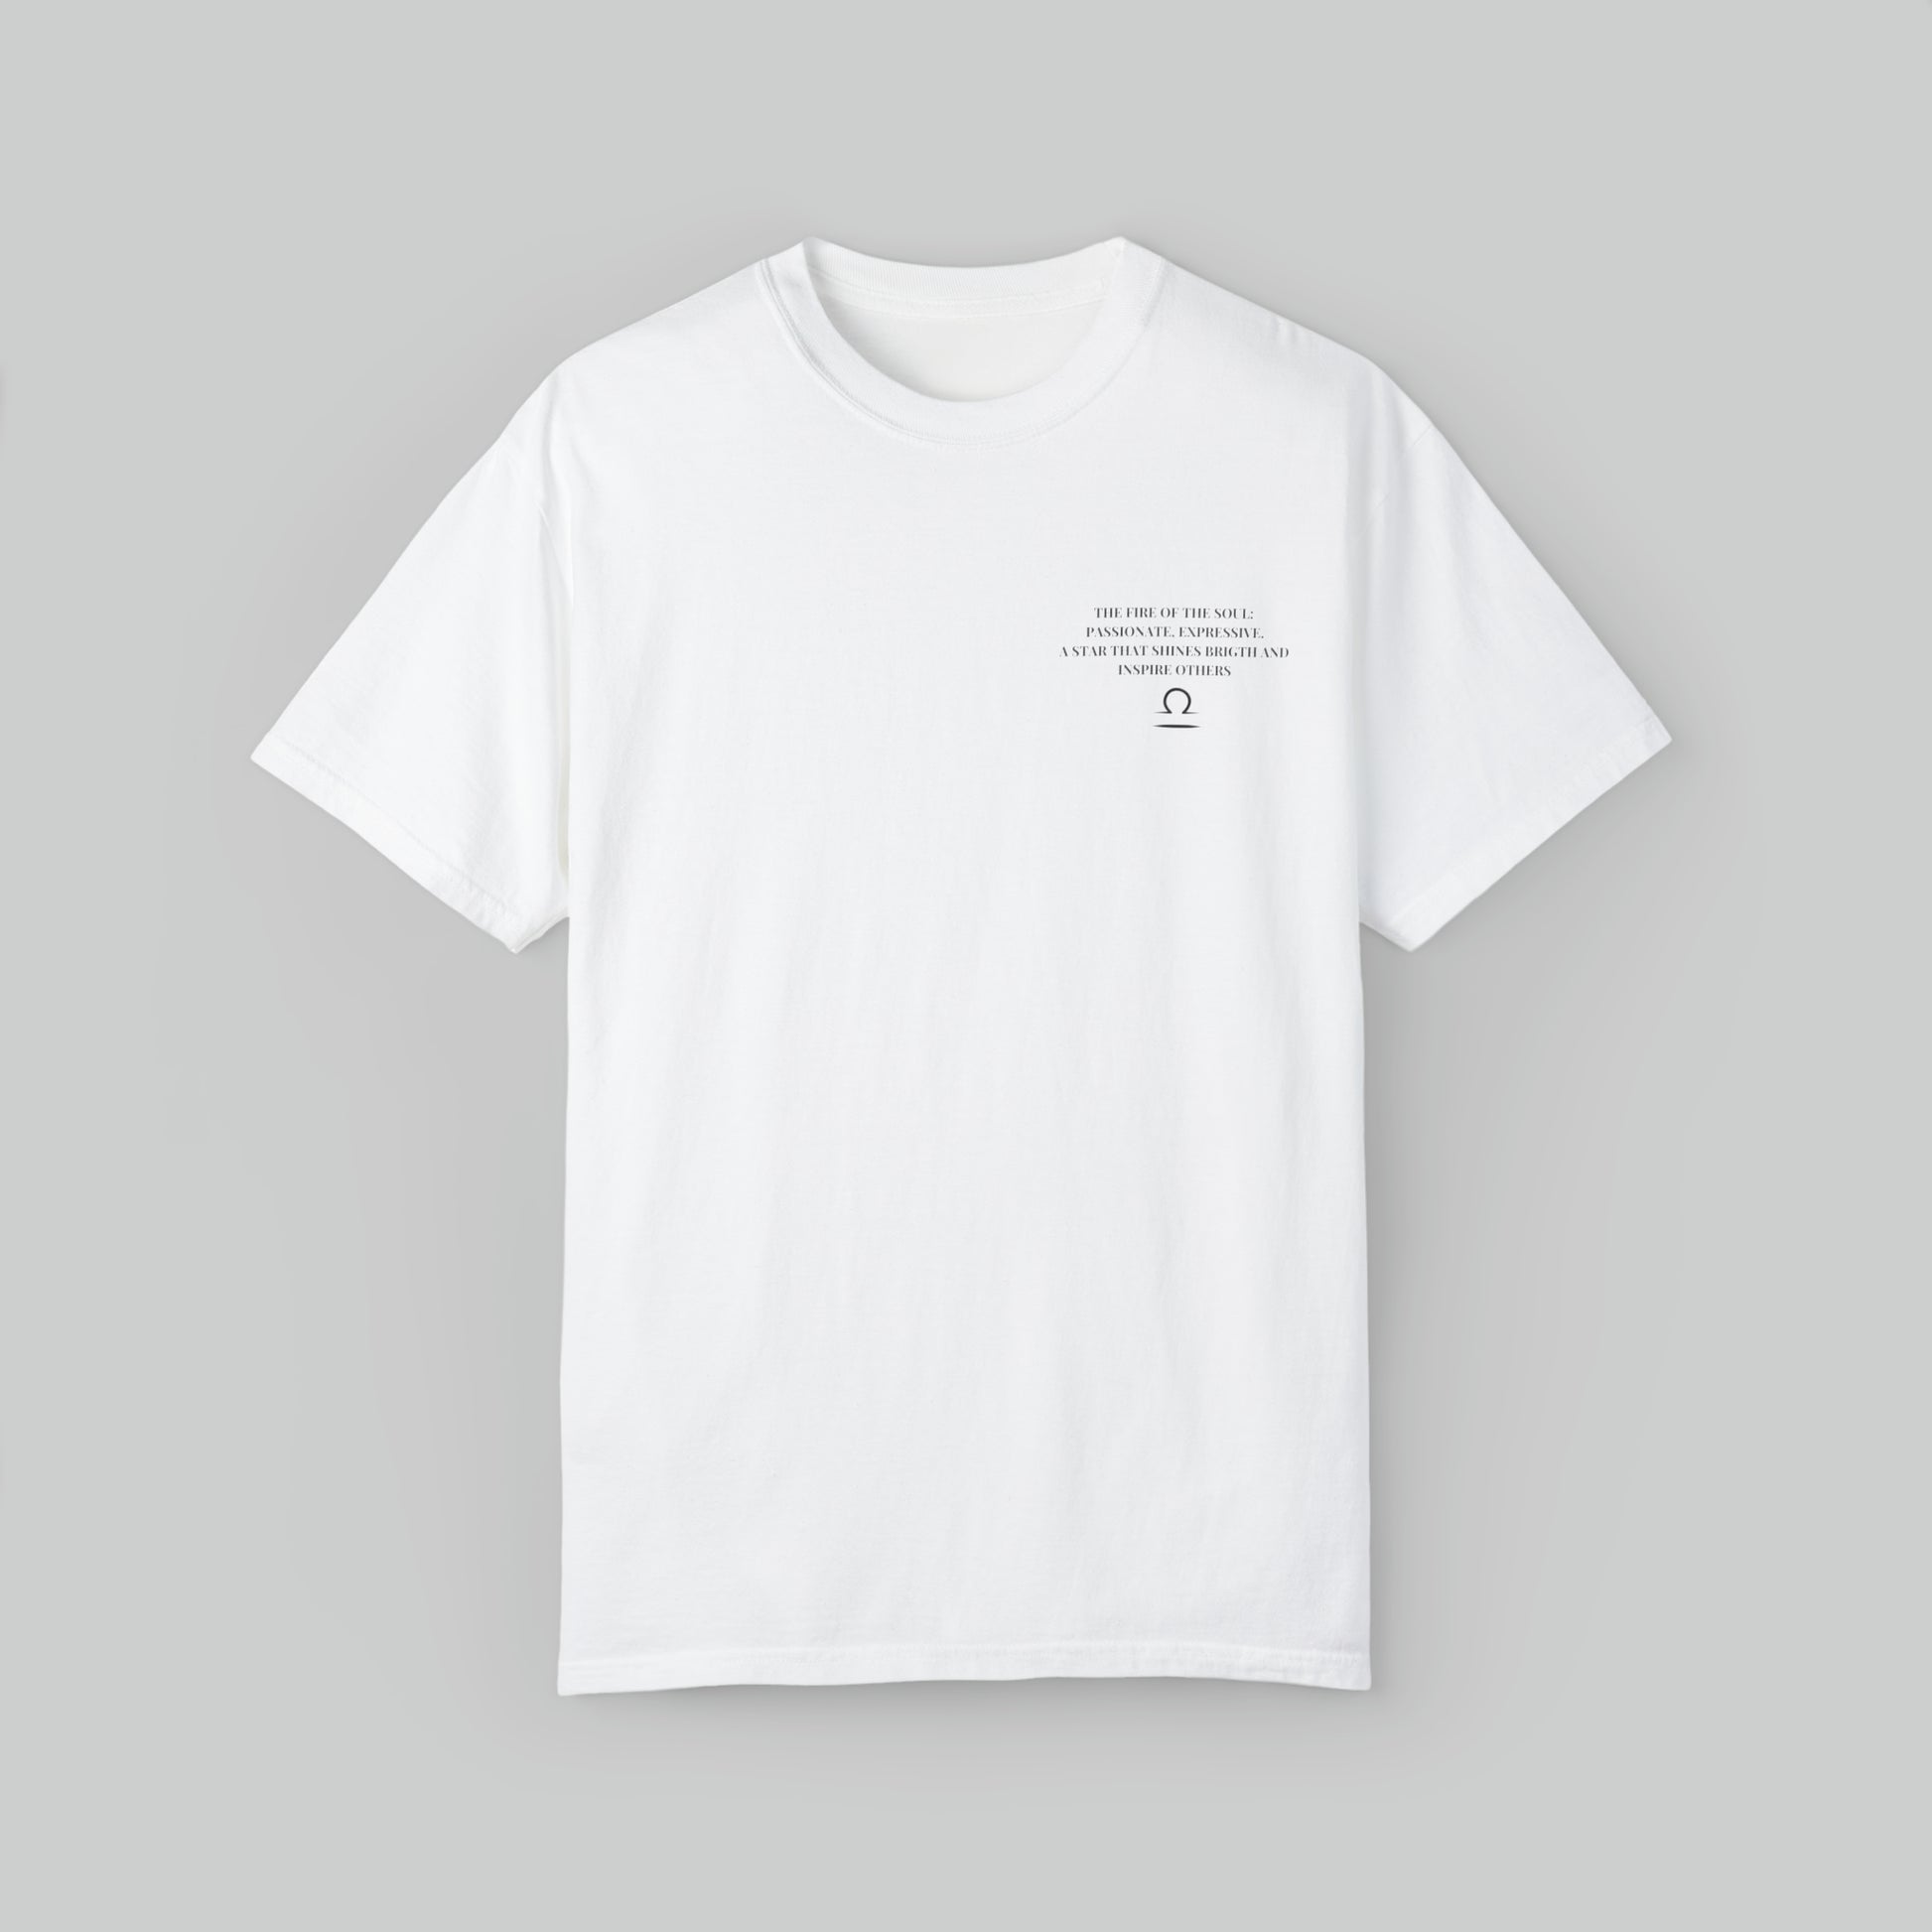 Libra the Breath of Grace - Cotton T-shirt - Minimaluno